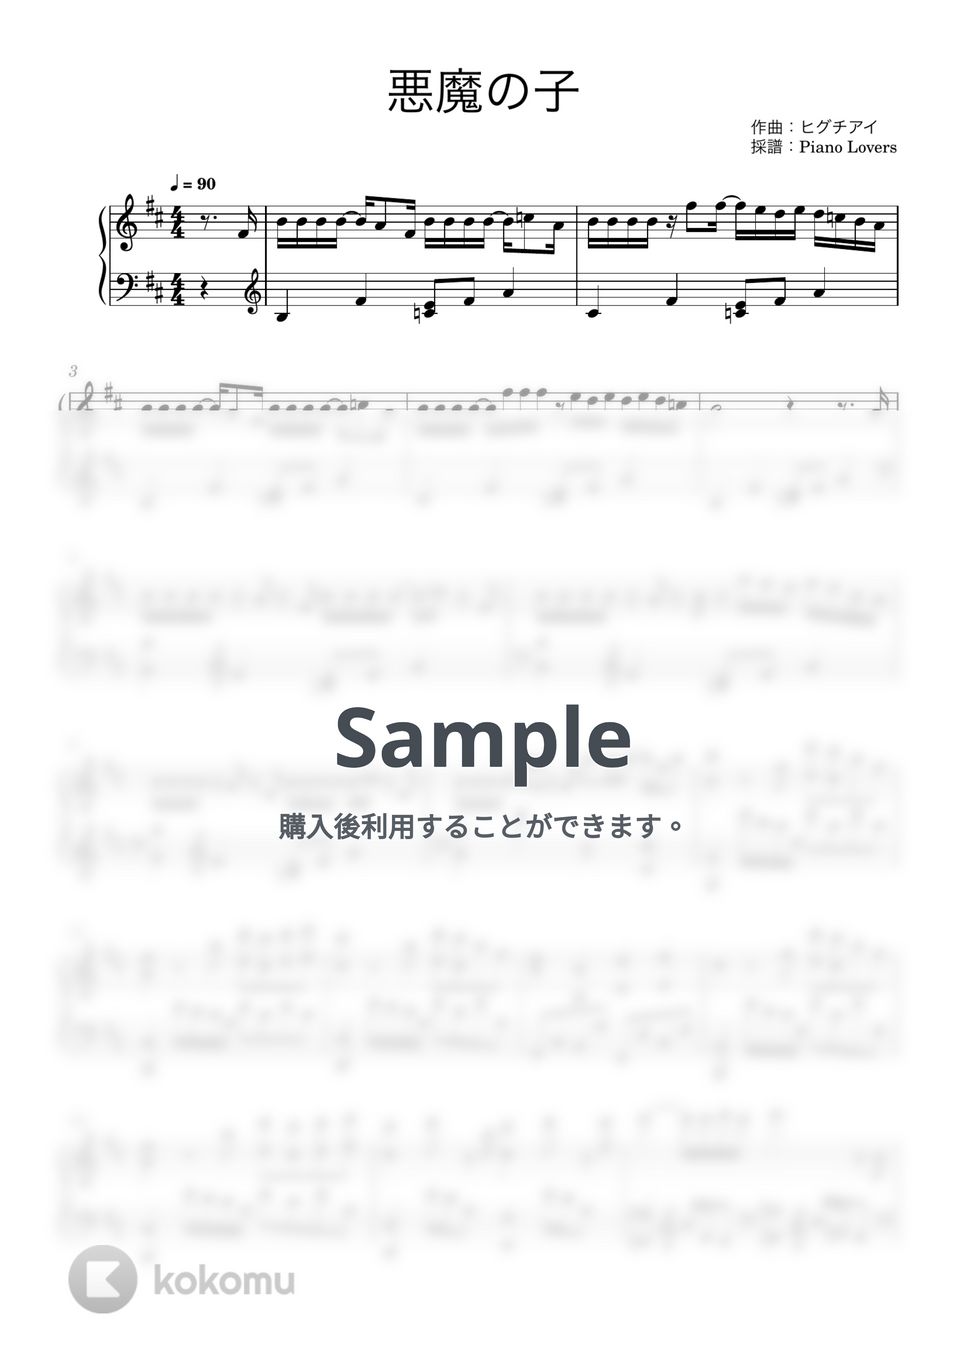 ヒグチアイ - 悪魔の子 (進撃の巨人 / ピアノ楽譜 / 中級) by Piano Lovers. jp